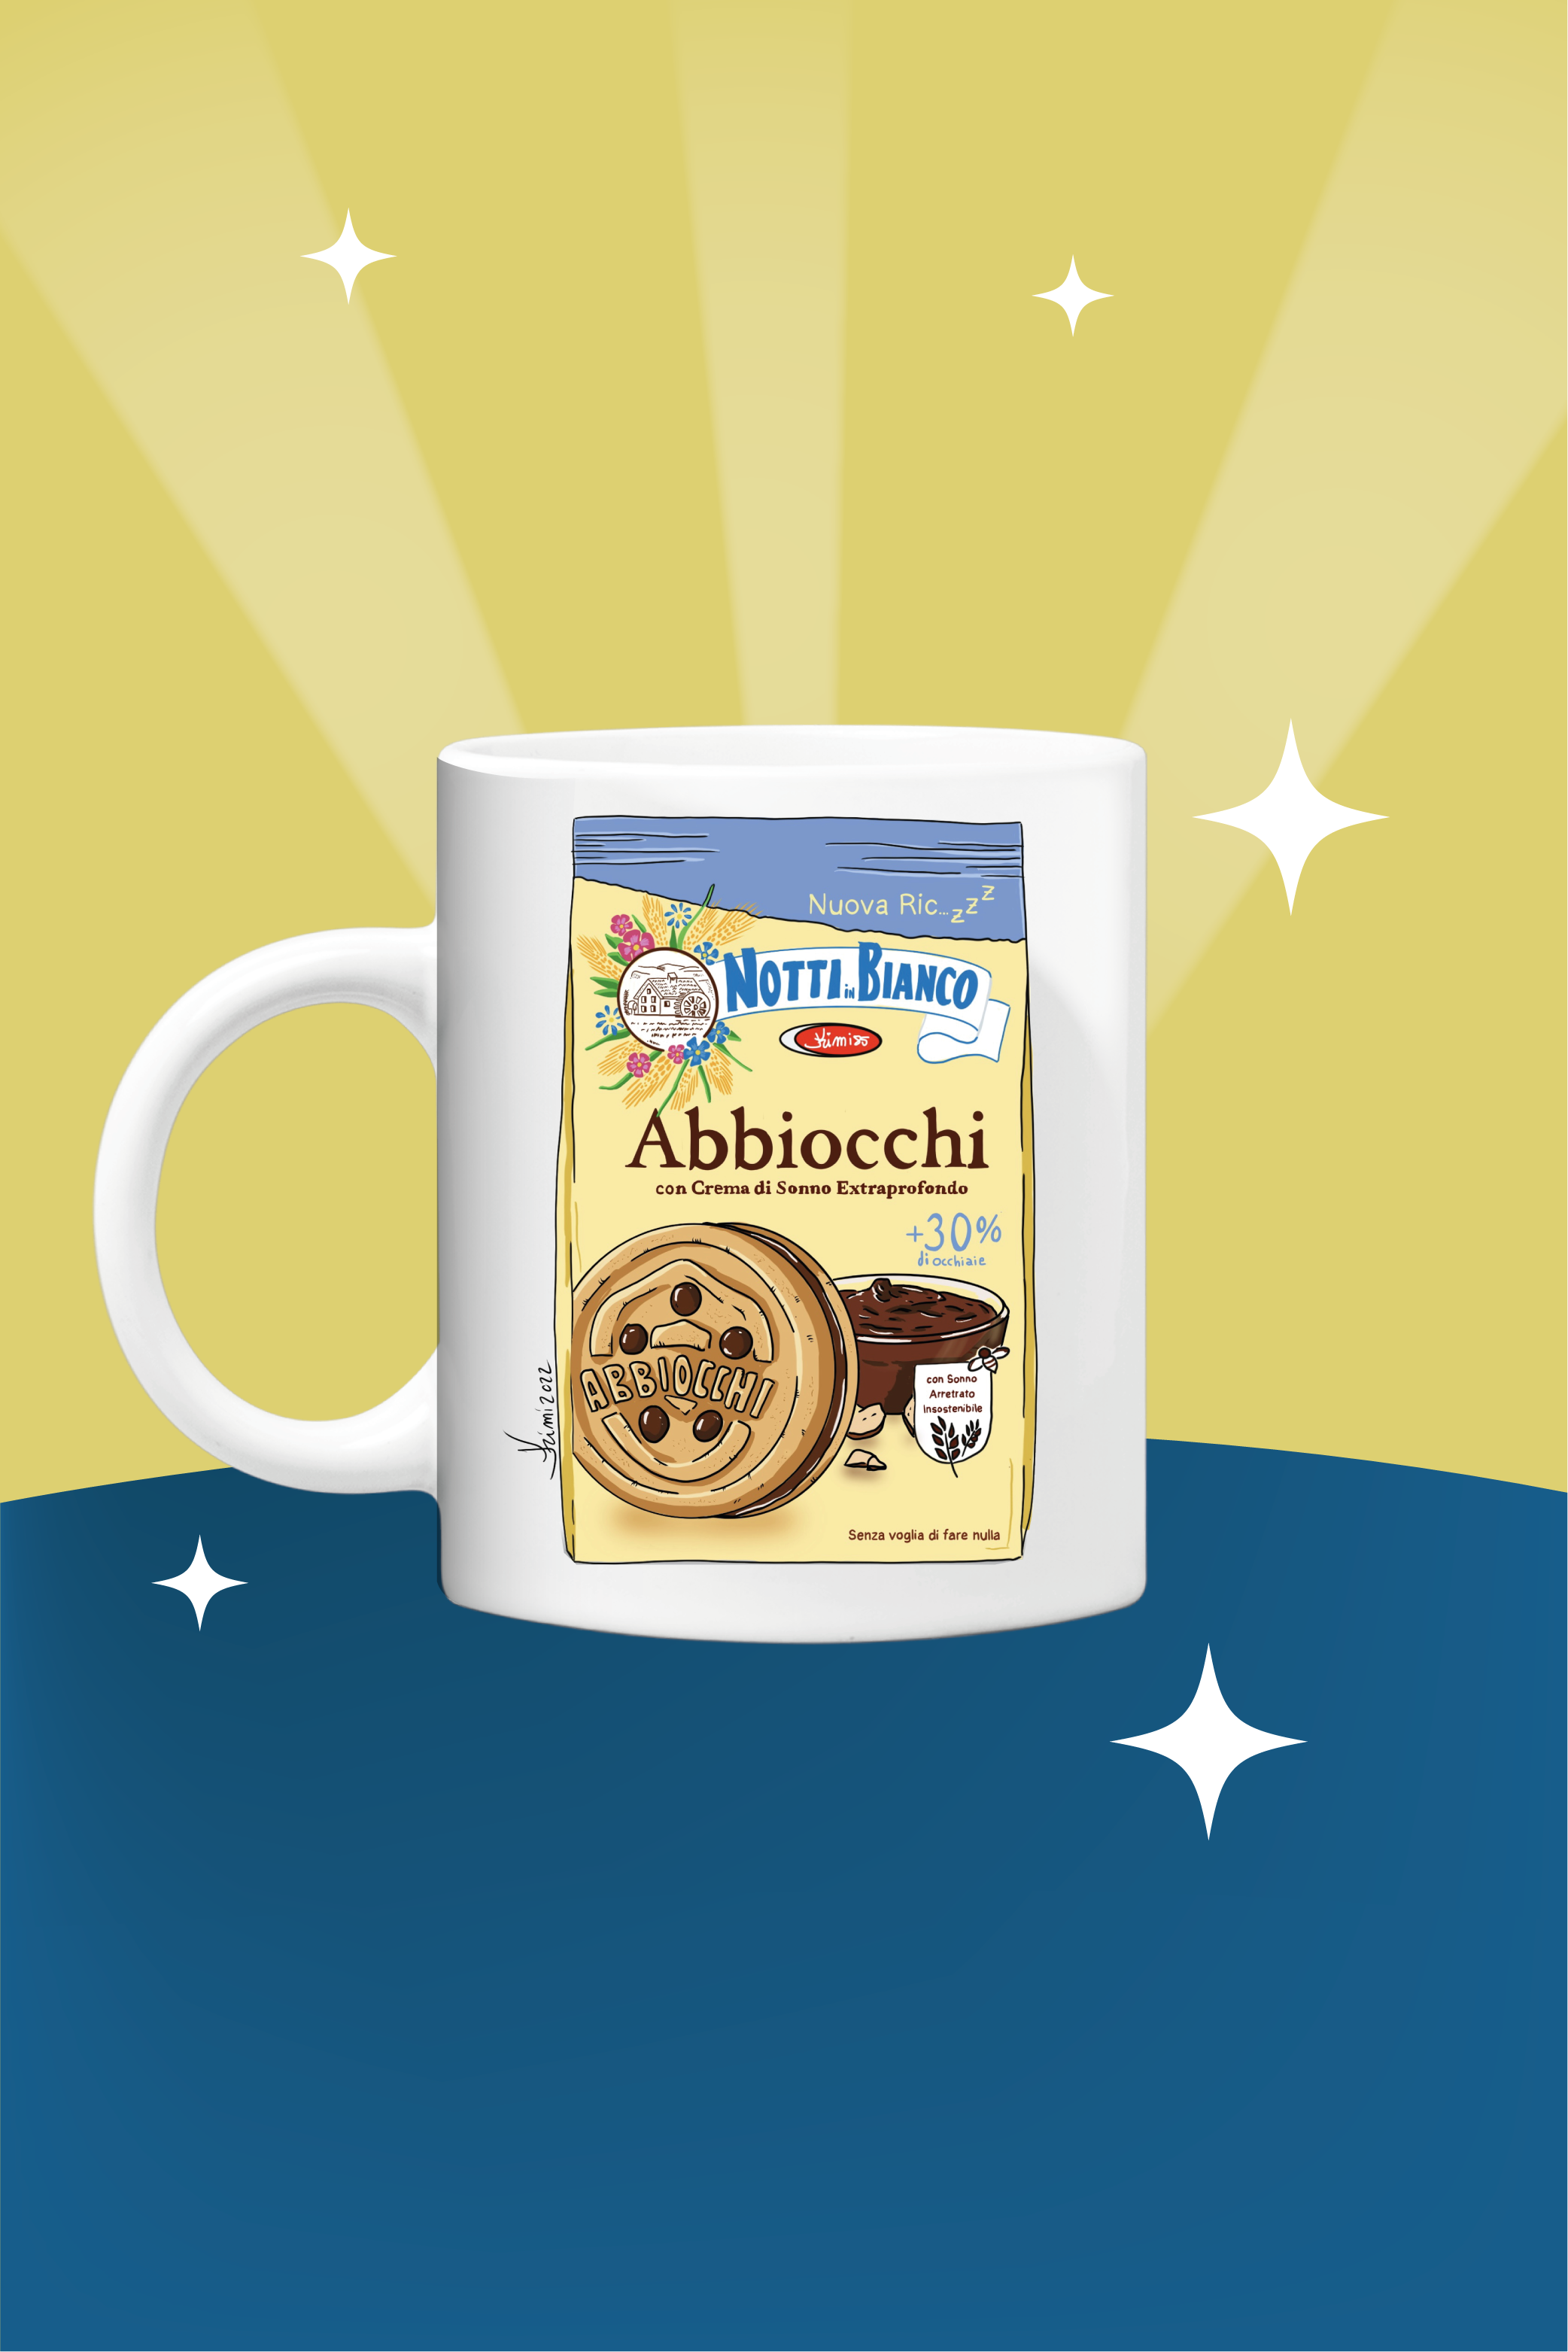 Abbiocchi mug - by KIMI 85